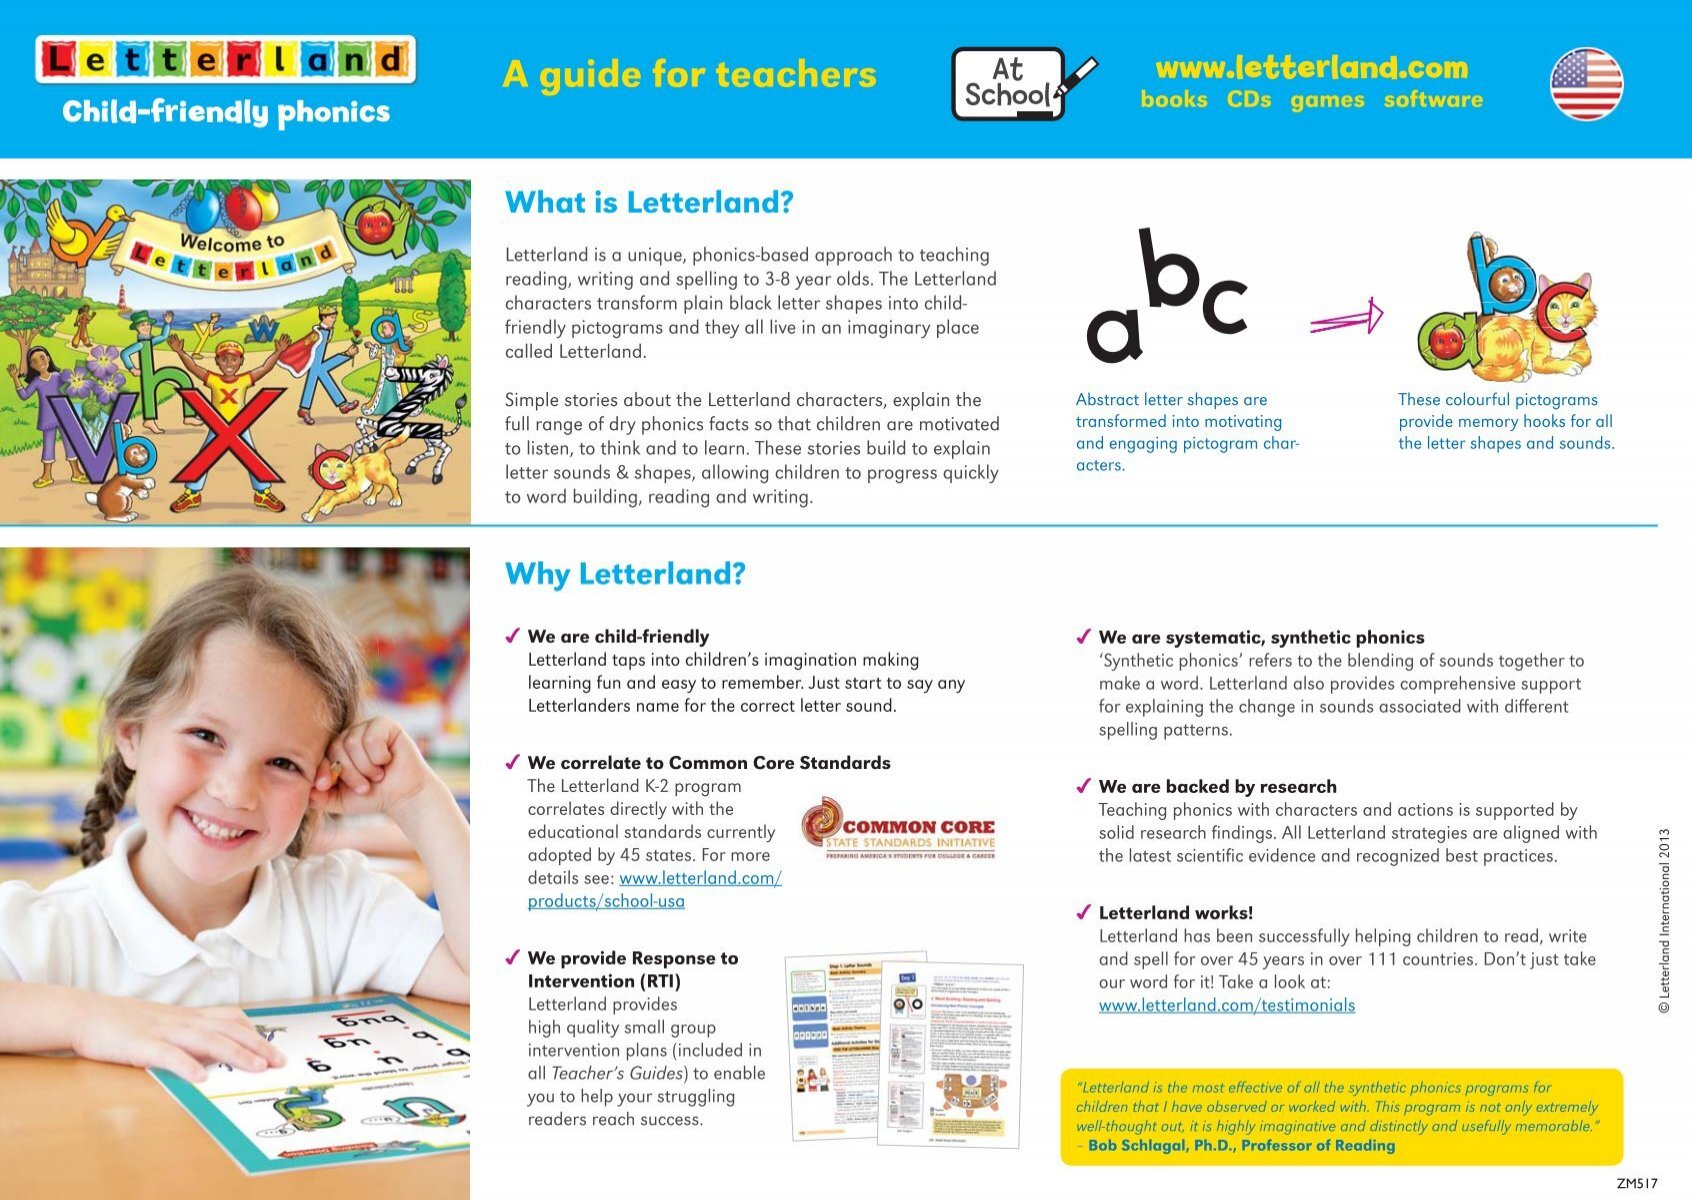 teacher-s-guide-leaflet-letterland